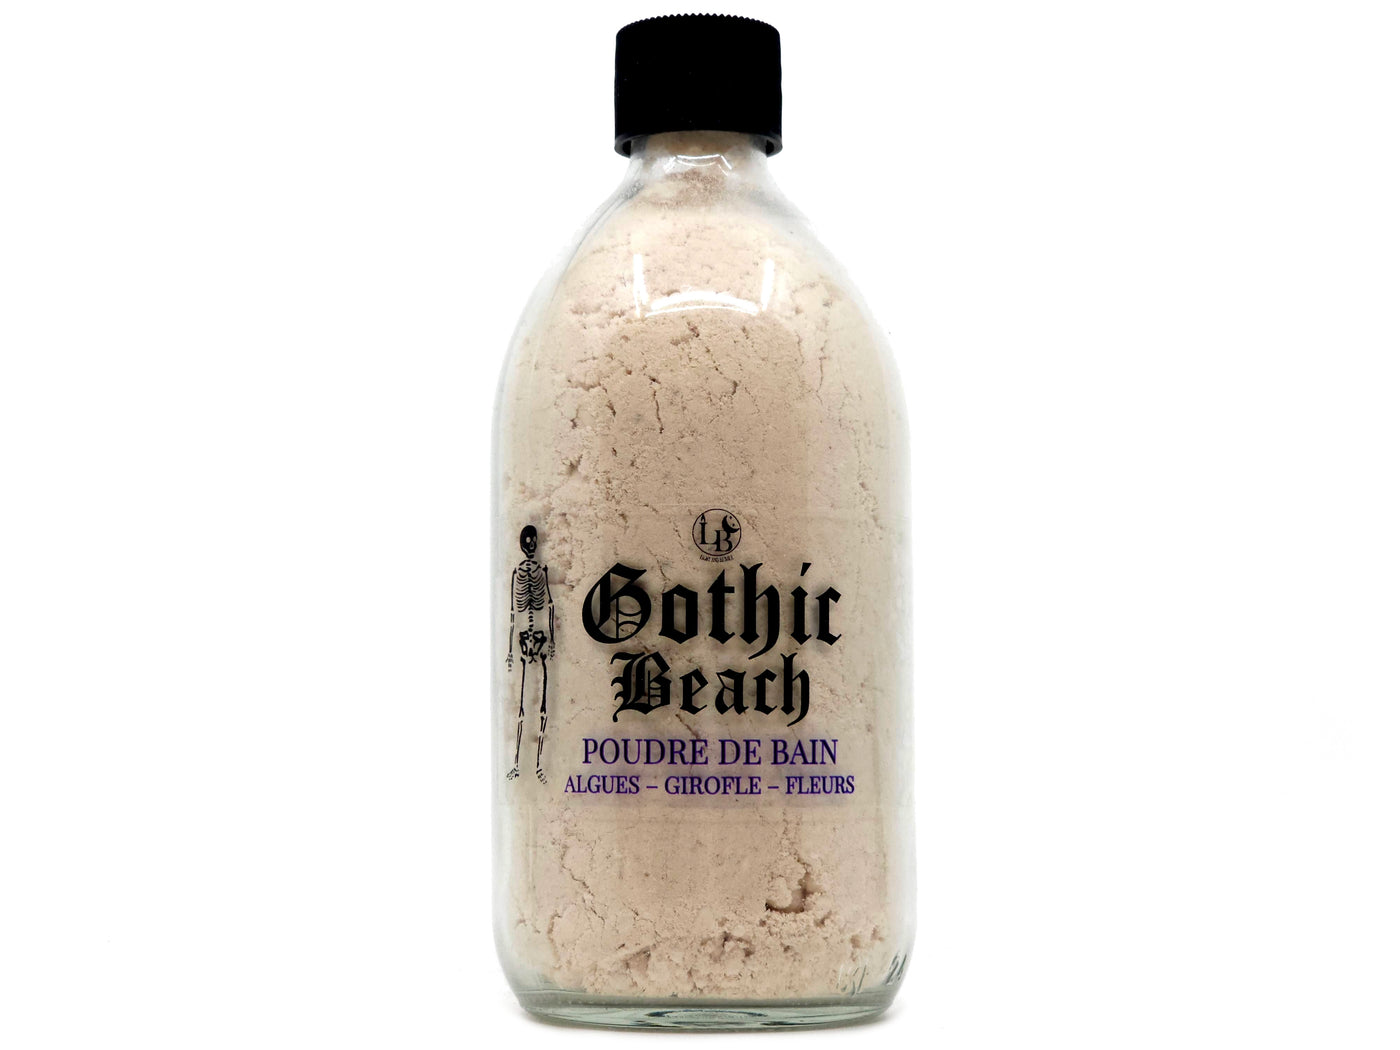 GOTHIC BEACH - foaming bath powder